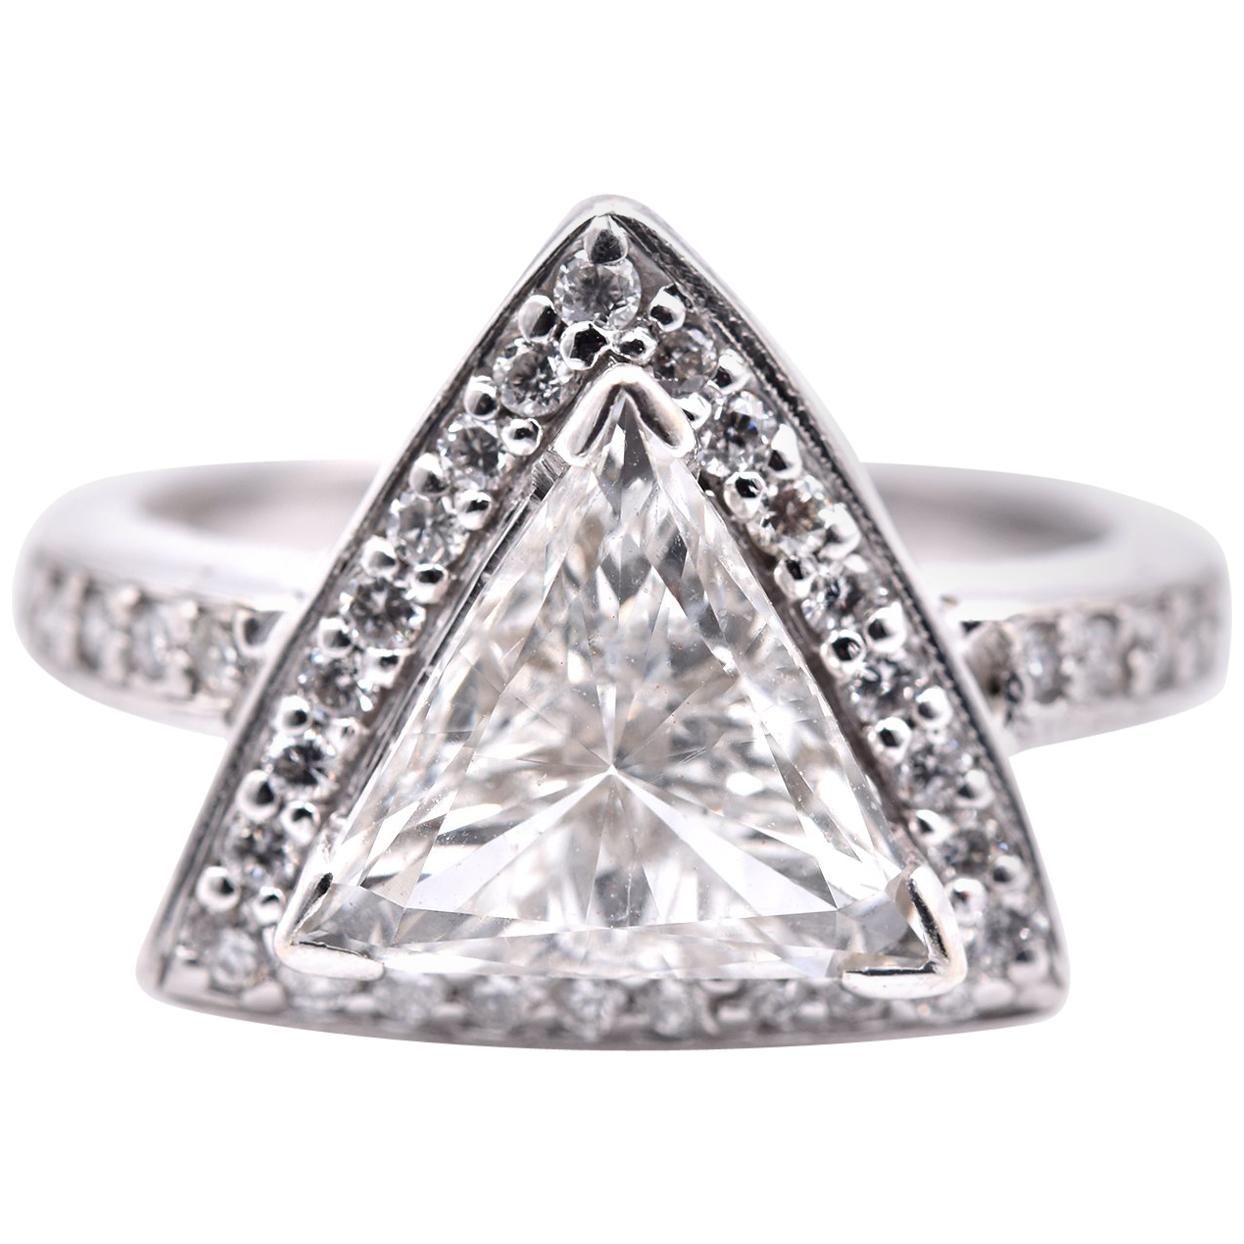 2.01 Carat Trillion Cut 14 Karat White Gold Diamond Engagement Ring